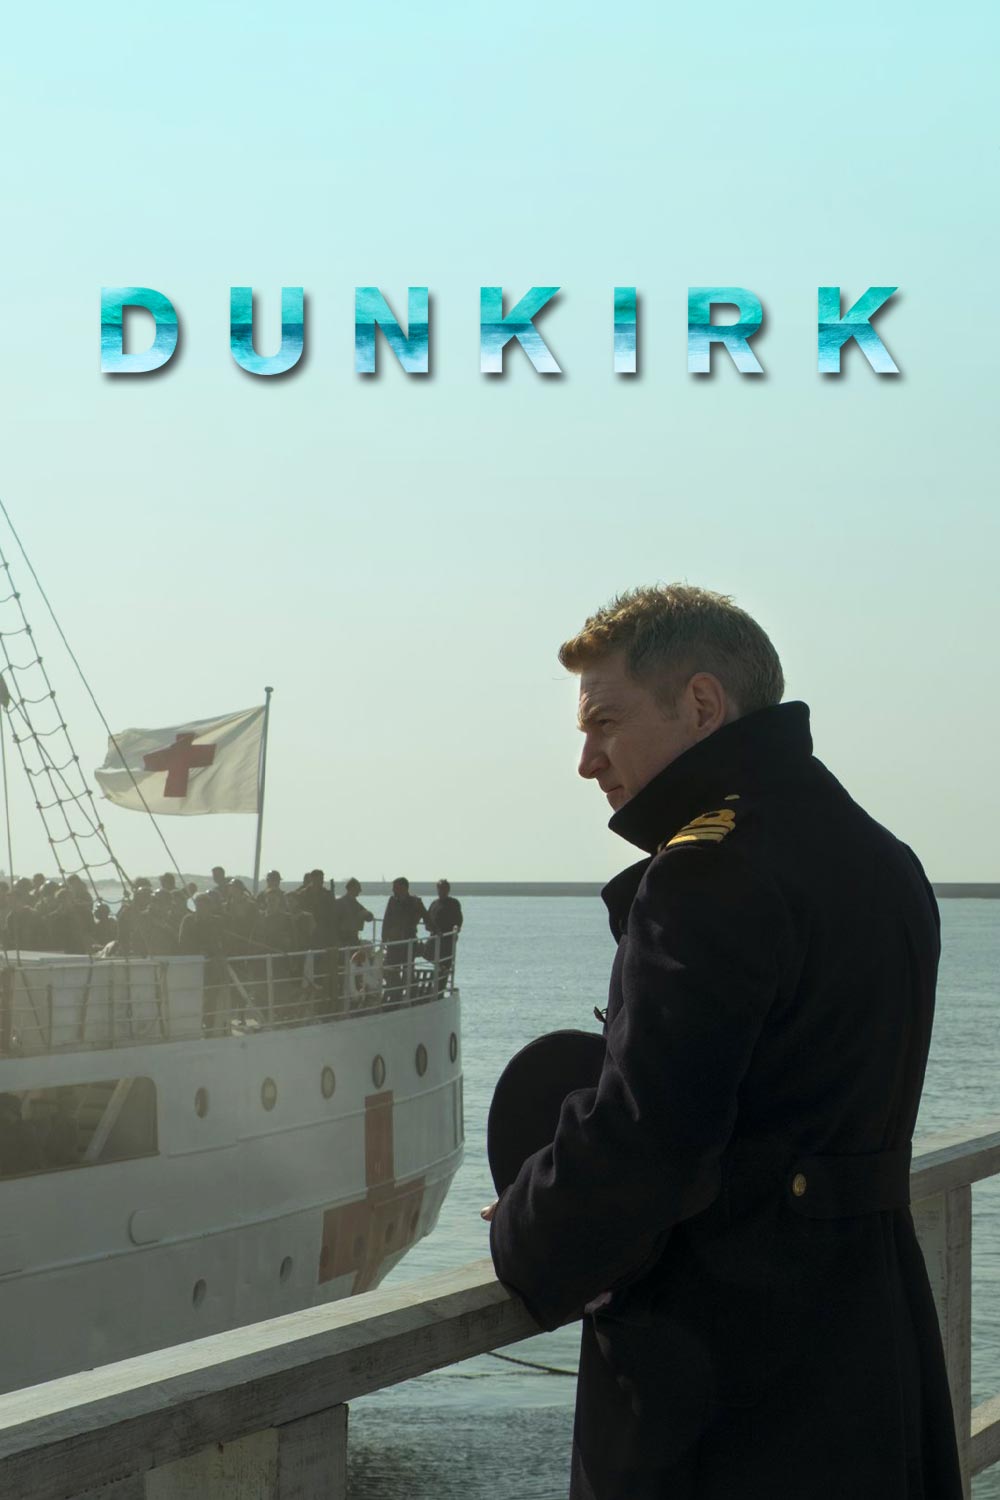 Watch Dunkirk Online